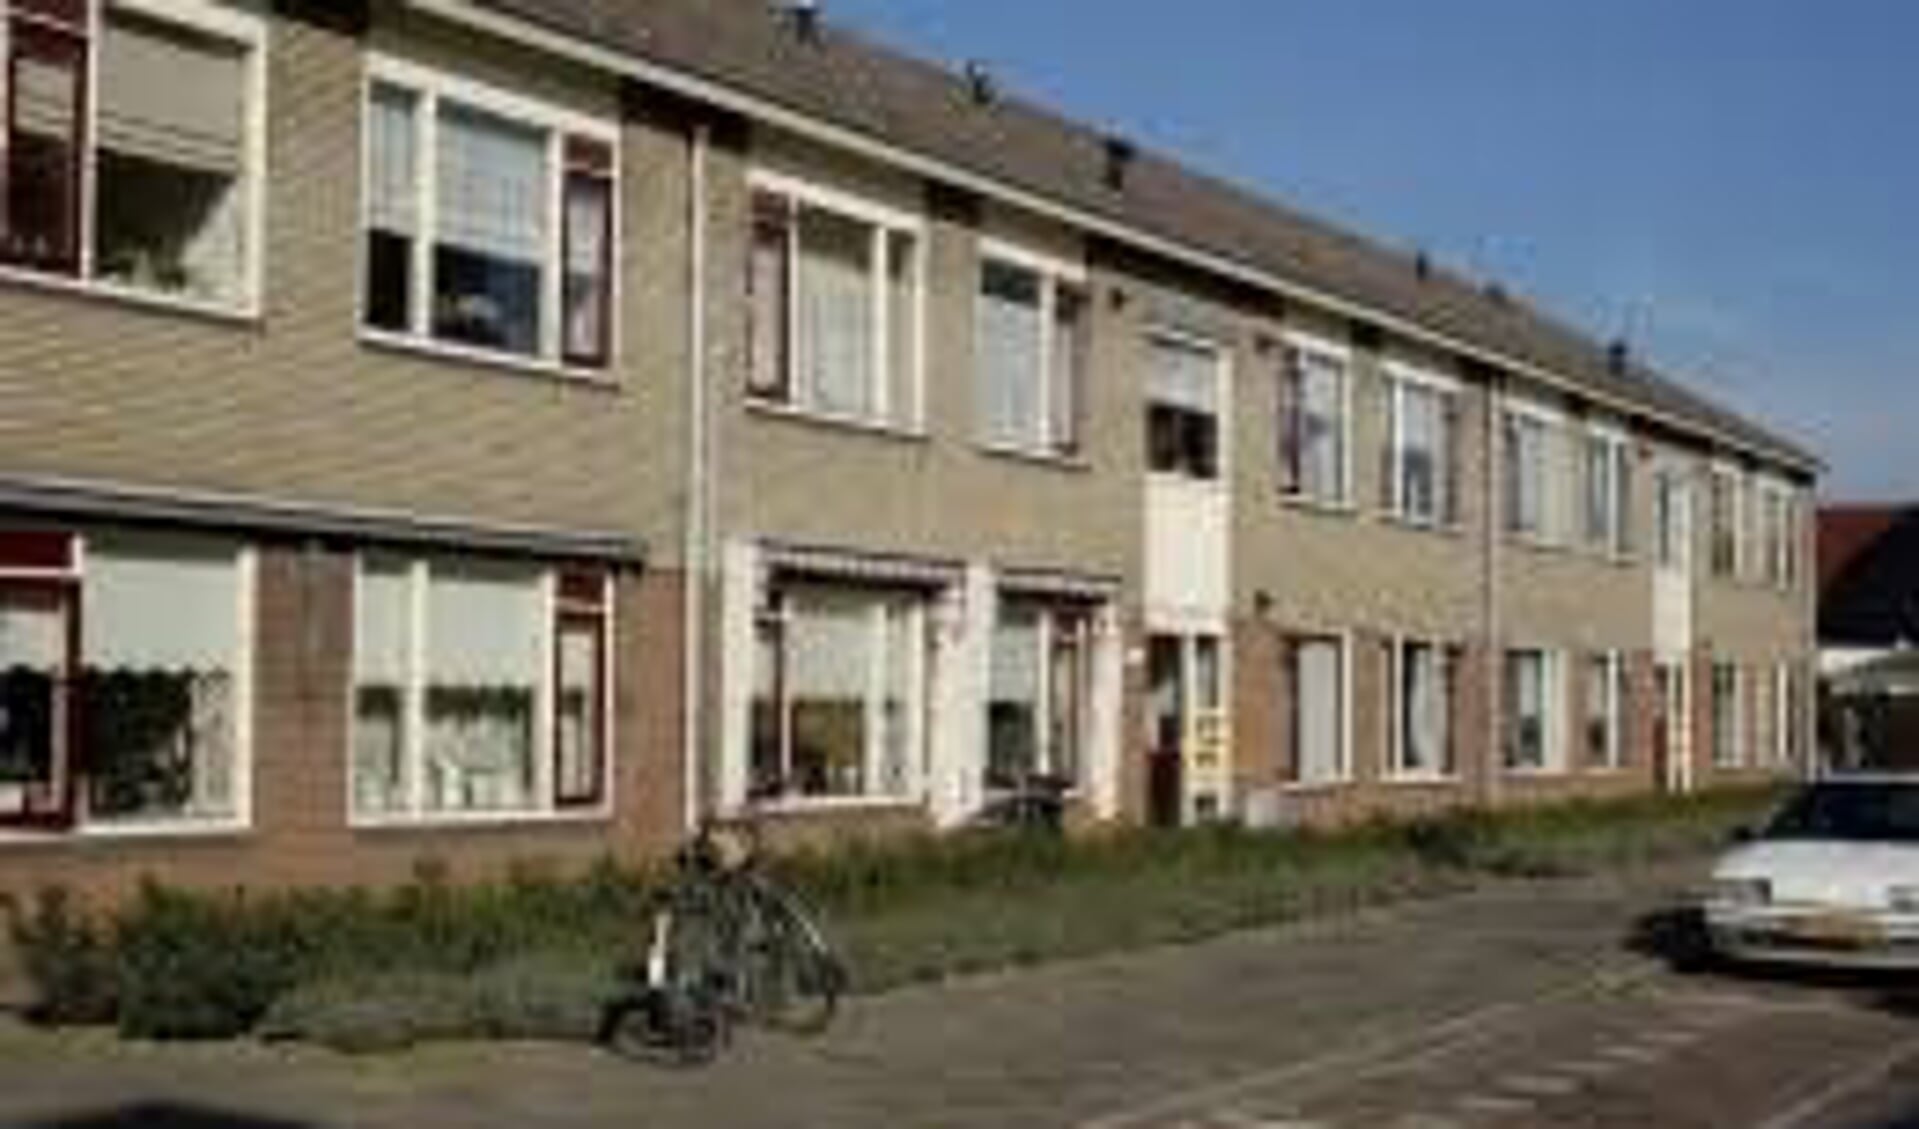 Sociale huurwoningen in Beverwijk.